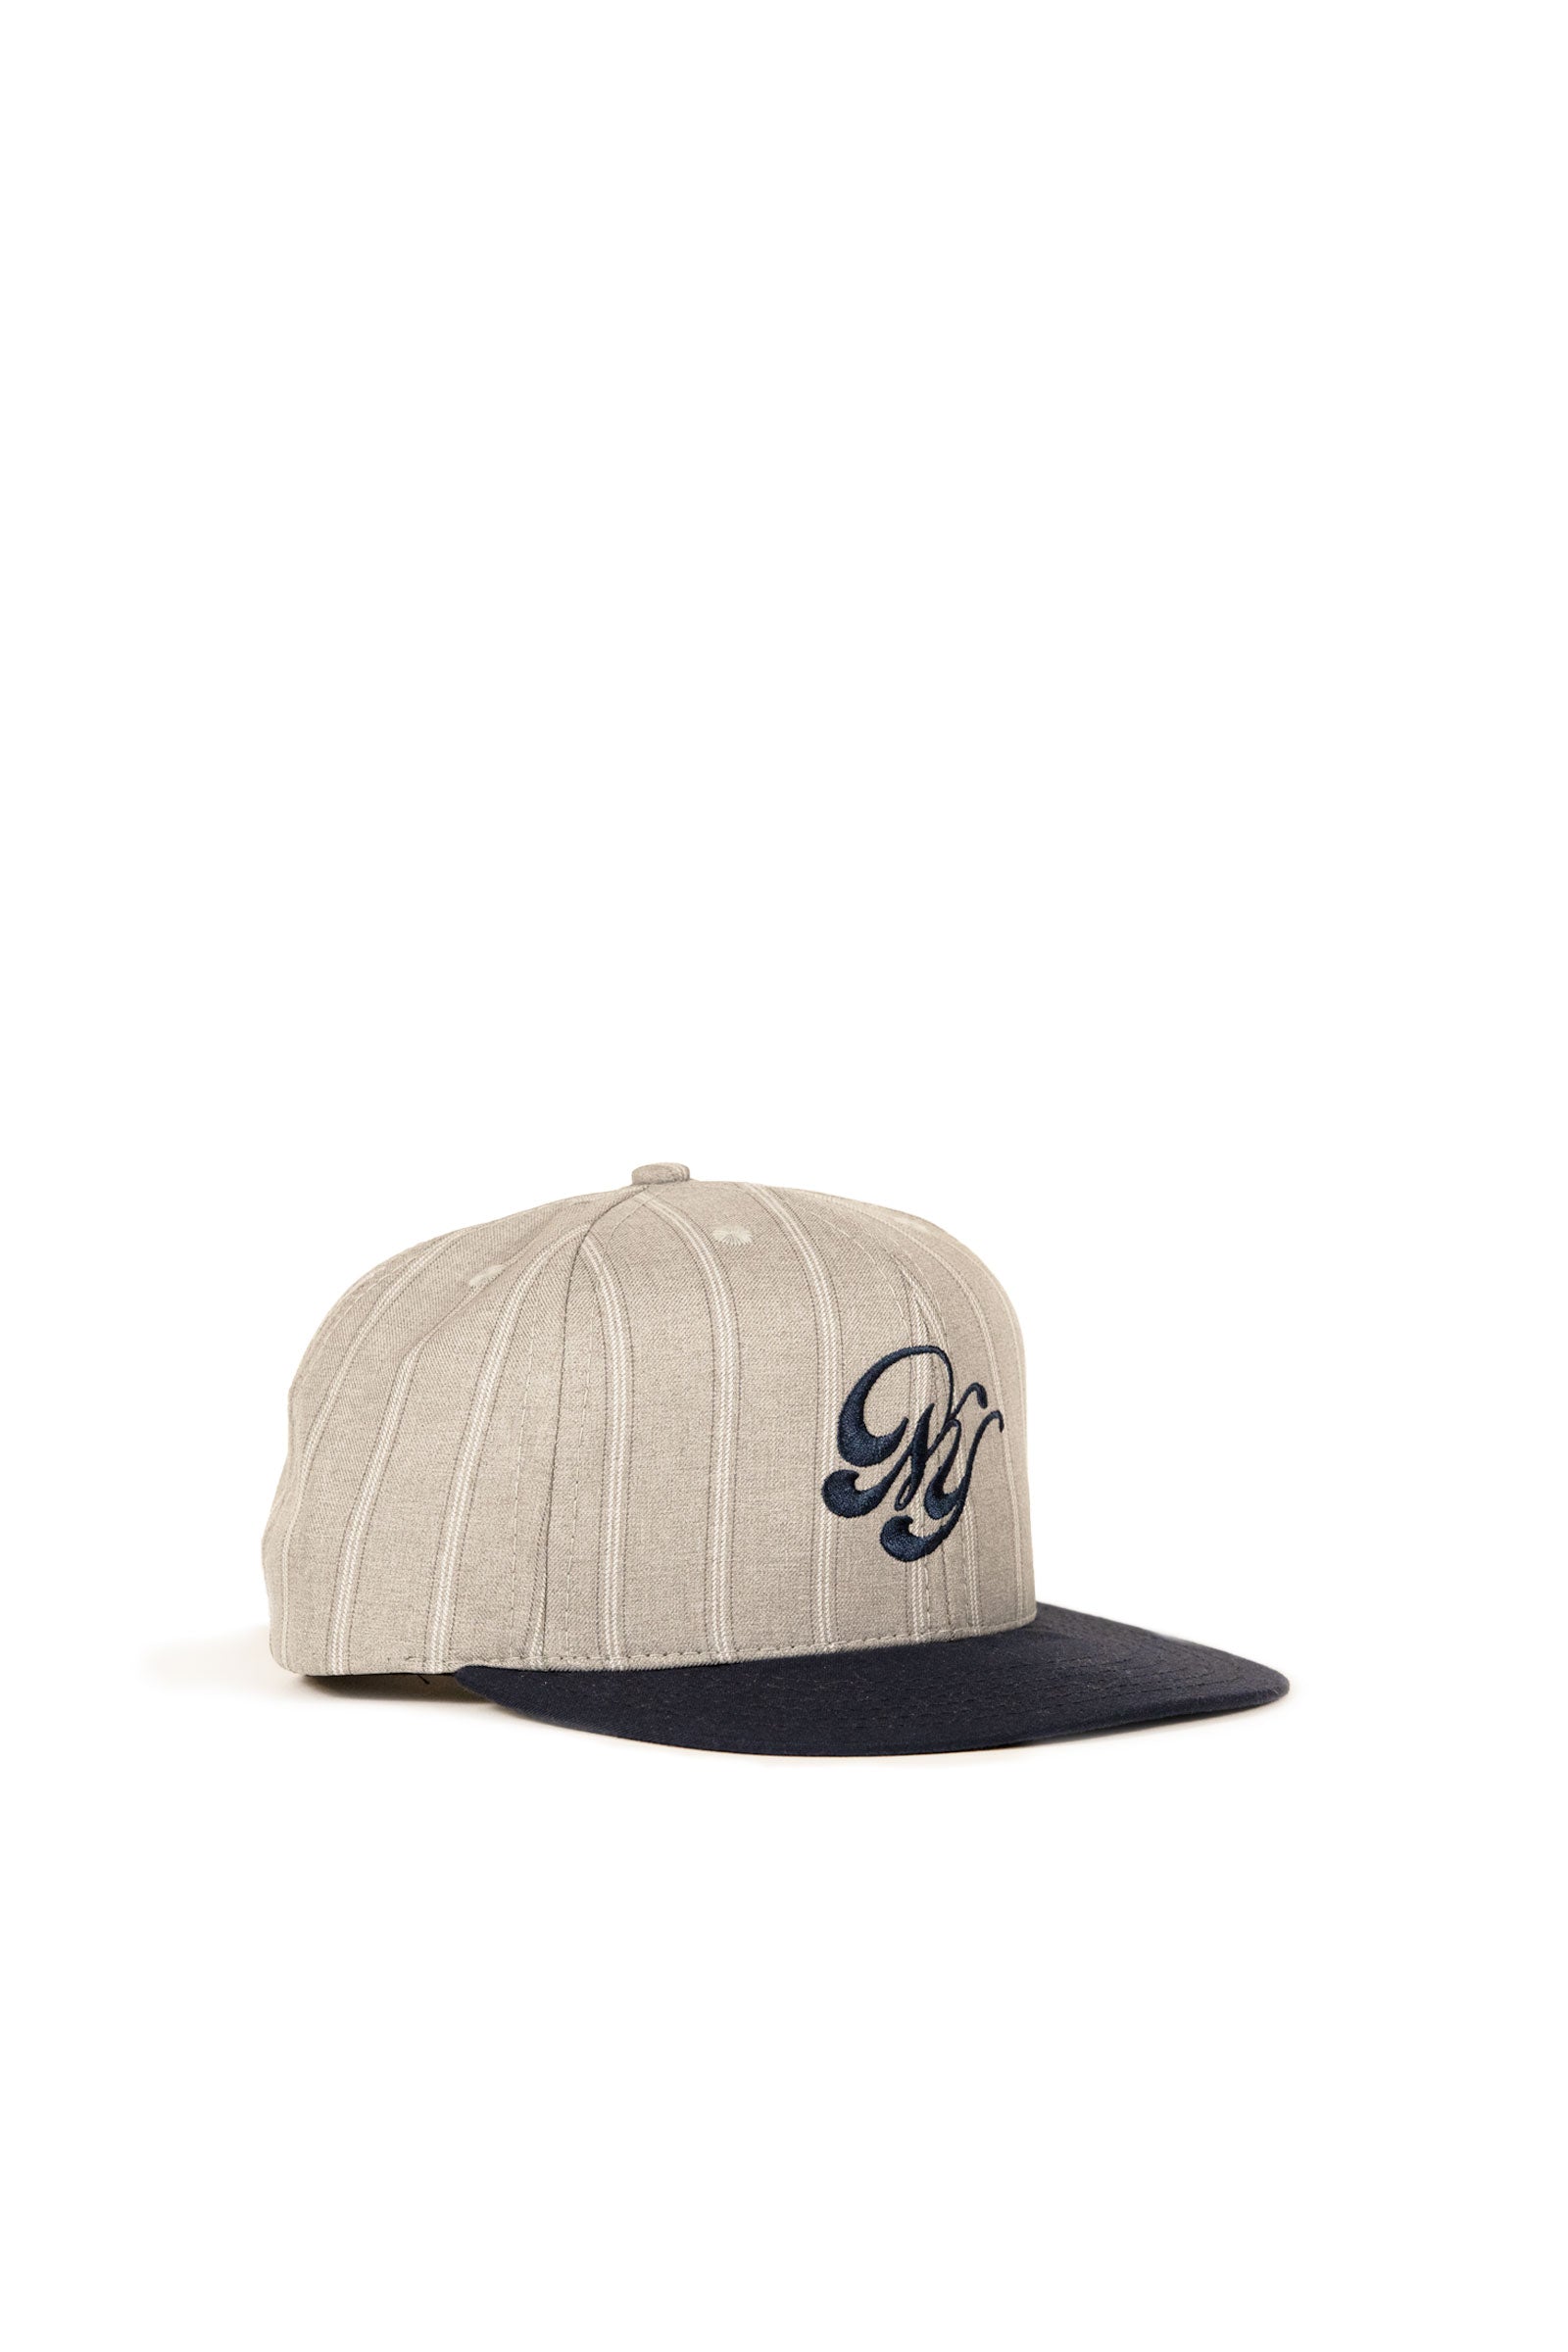 NY Baseball Cap - Grey/Navy